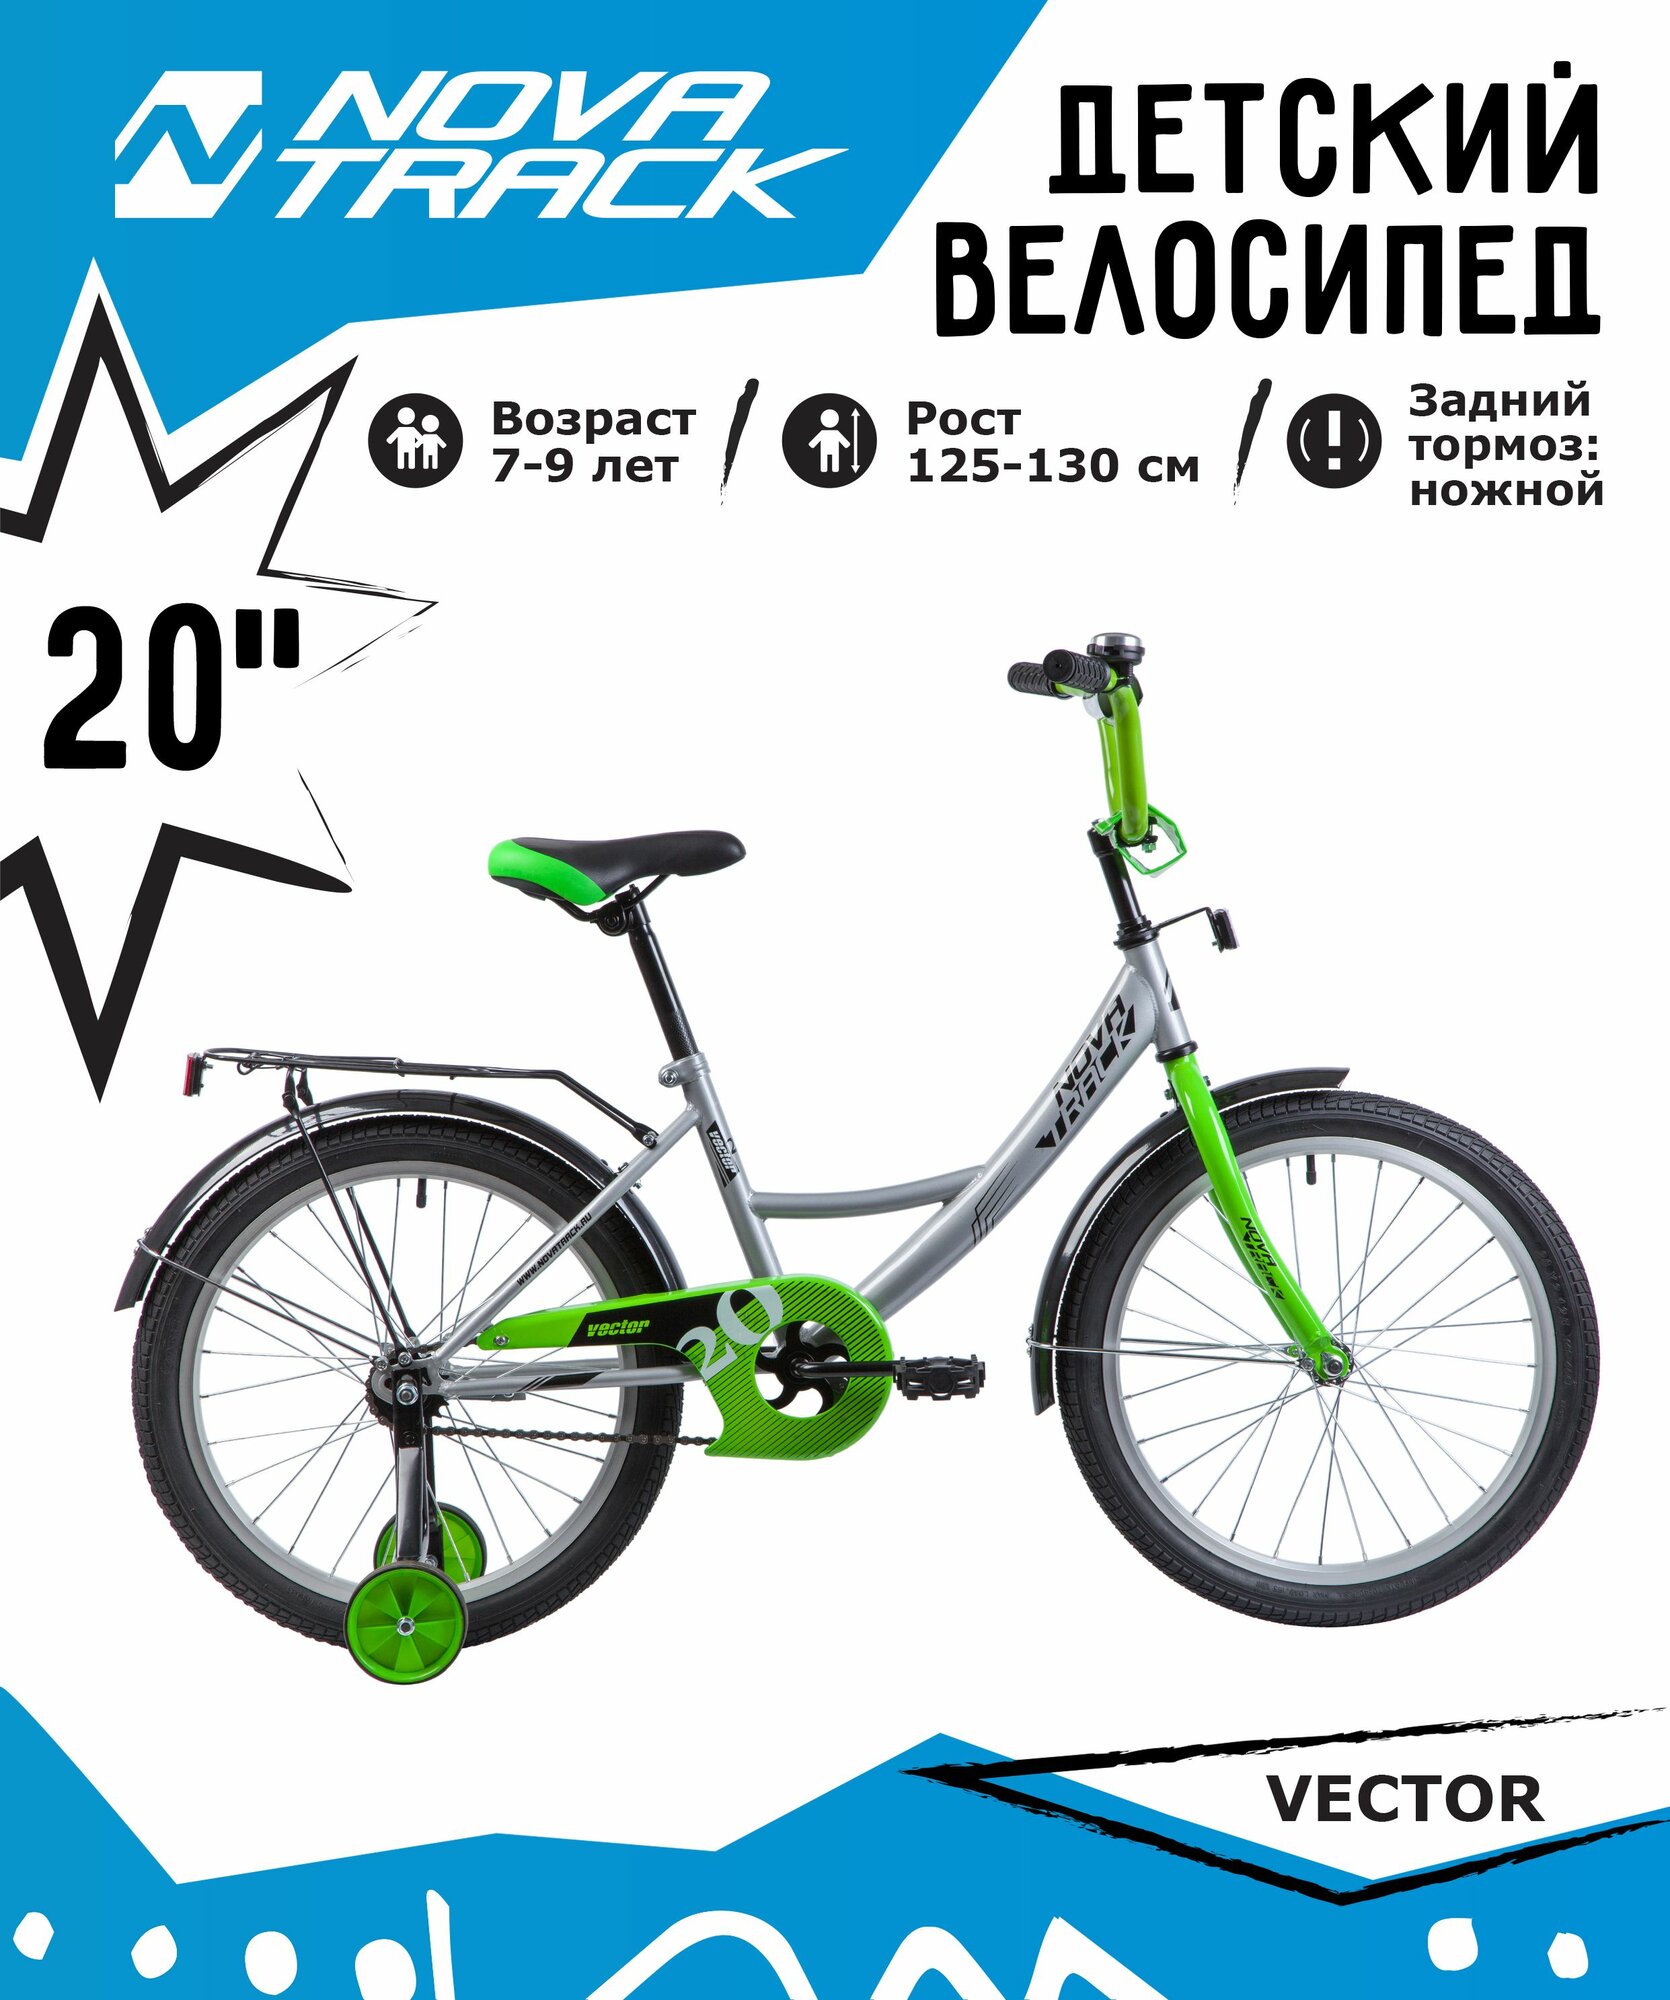 Велосипед NOVATRACK 20", VECTOR, серебристый, защита А-тип, тормоз нож, крылья и багажник чёрн.